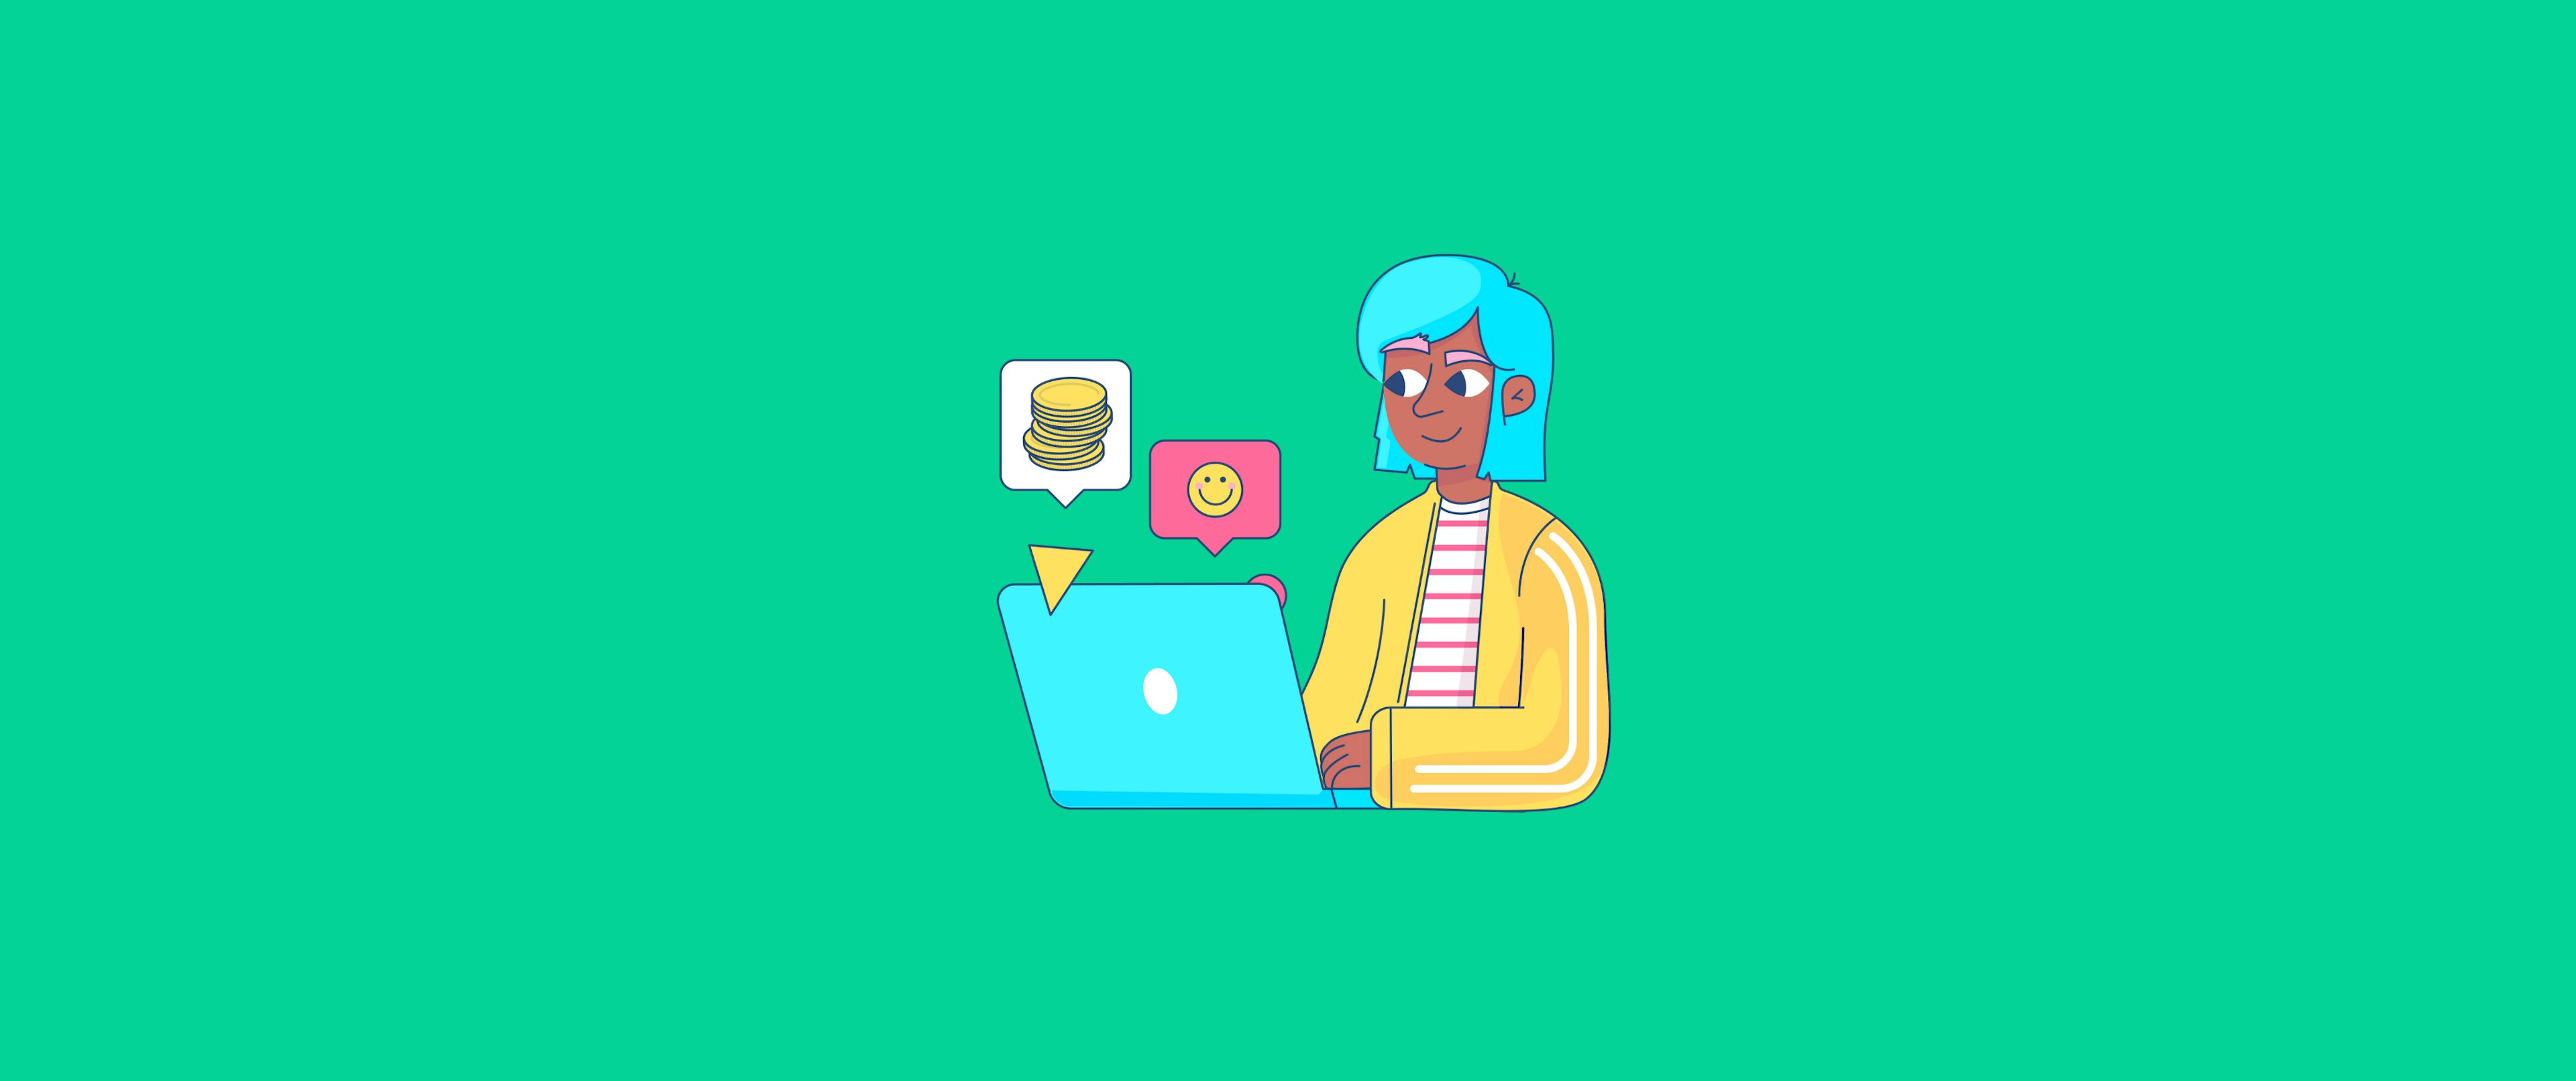 Illustrierte Frau, die am Computer sitzt und mit dem Investieren beginnt, als symbolisches Headerbild für den Artikel über Geldanlage.